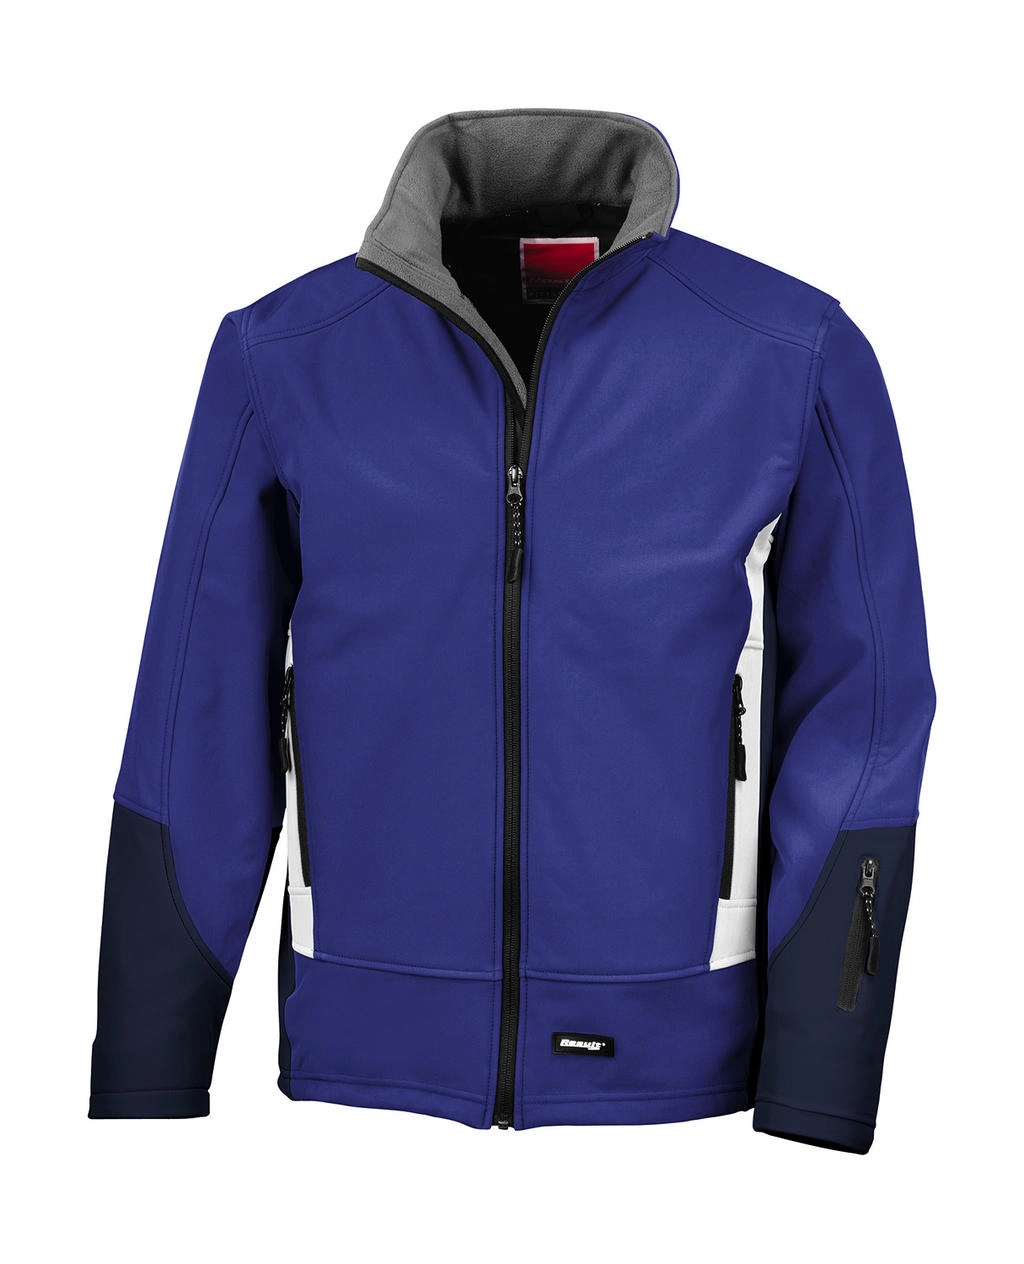 Blade Softshell Jacket zum Besticken und Bedrucken in der Farbe Royal/Navy/Pale Grey mit Ihren Logo, Schriftzug oder Motiv.